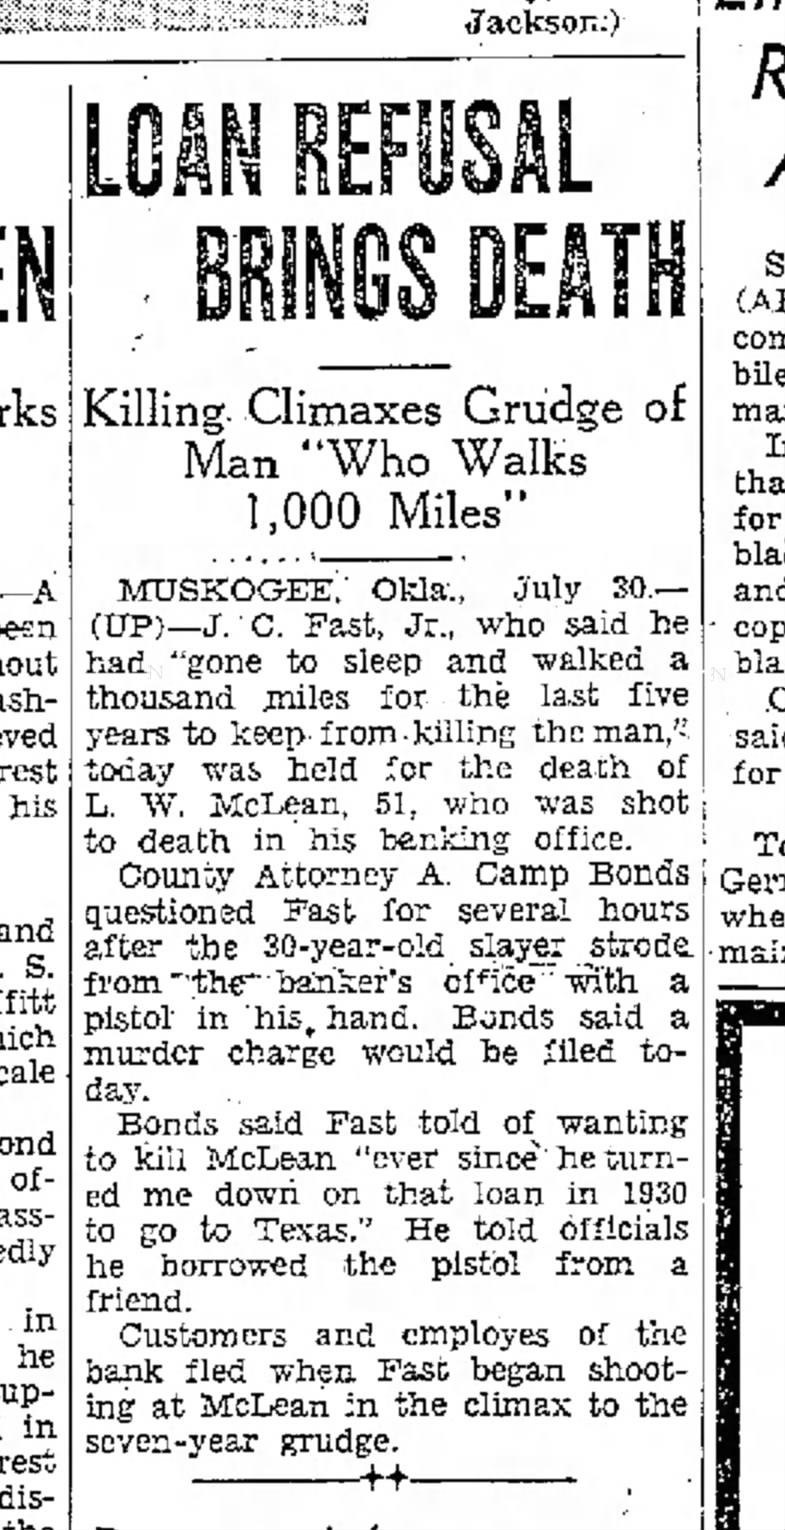 J.C. Fast, Jr. story in Ogden Standard-Examiner (Utah) 30 July 1937